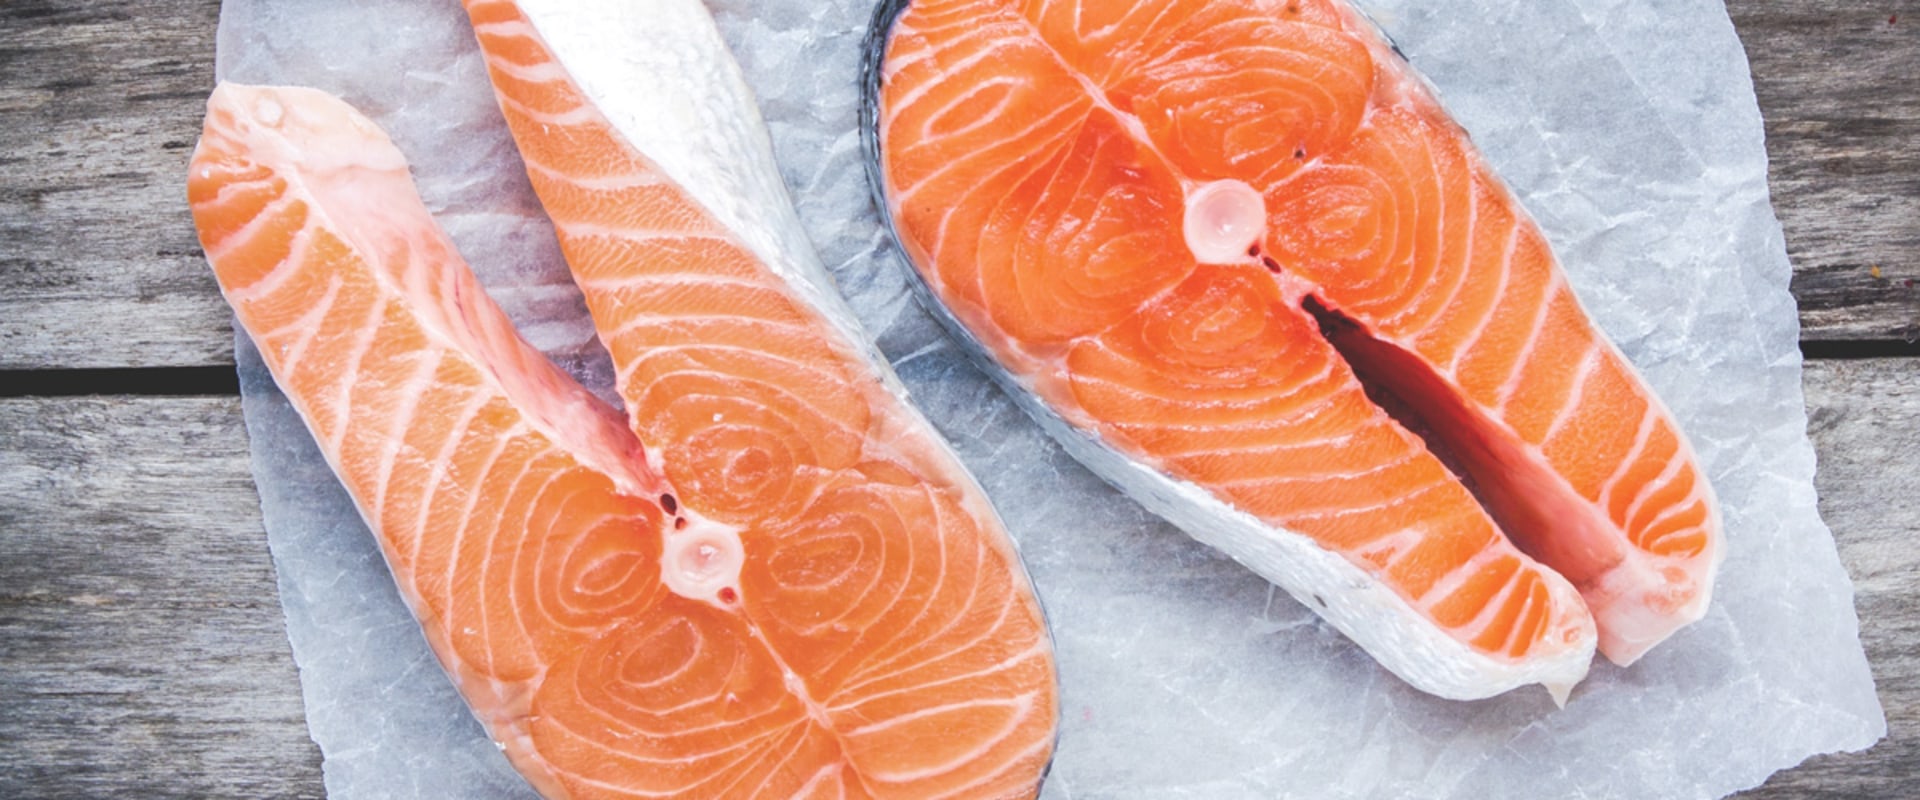 Health Risks of Eating Farmed vs Wild-Caught Salmon